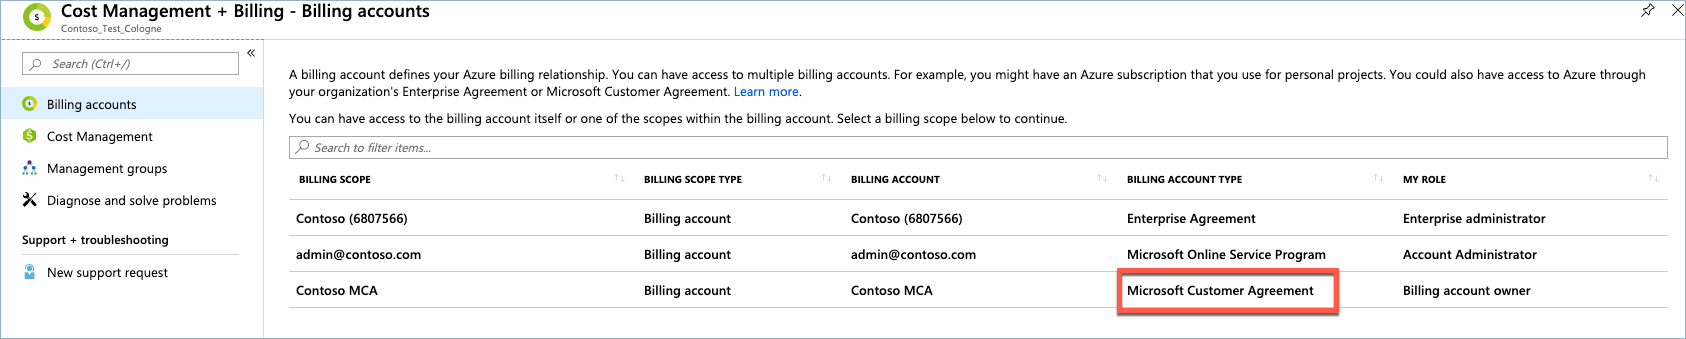 Perjanjian Pelanggan Microsoft, Jenis Akun Tagihan, Daftar akun tagihan, portal Microsoft Azure